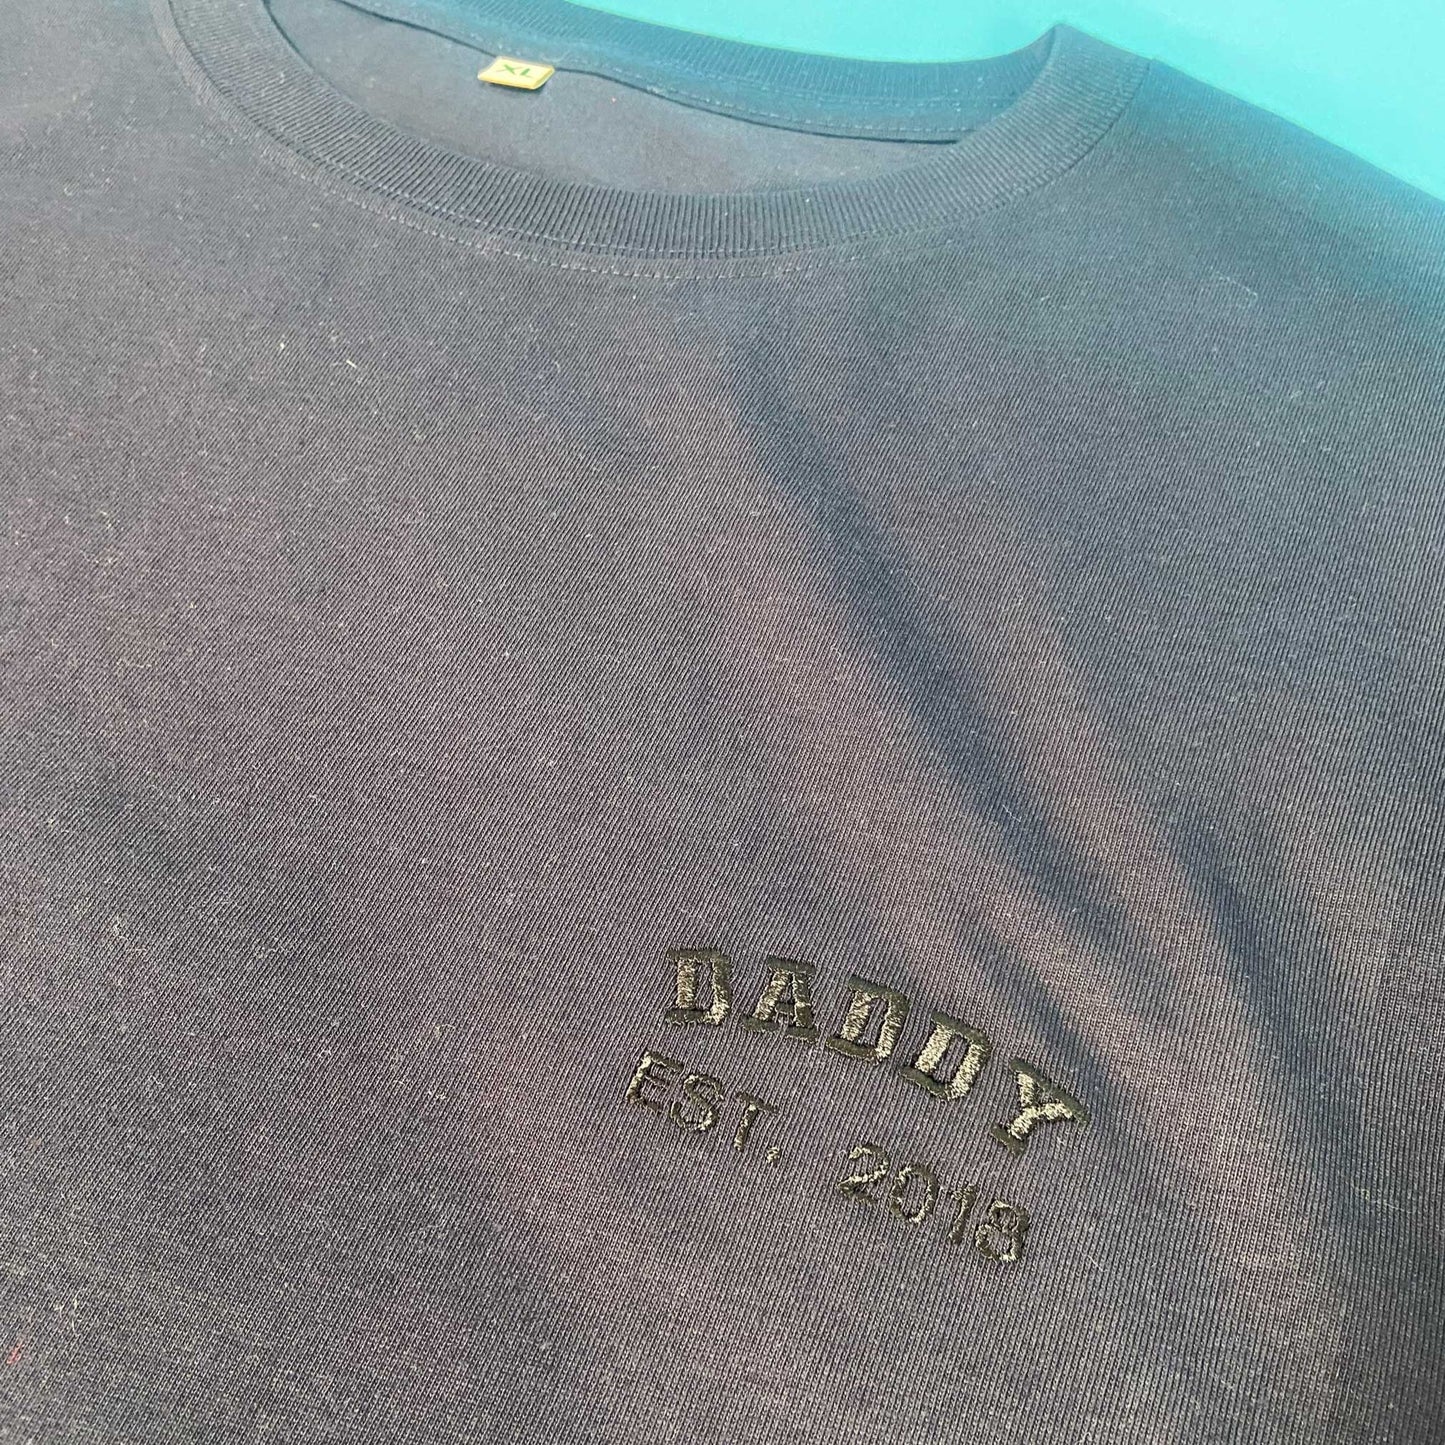 XL Daddy EST 2018 Year T-Shirt SALE